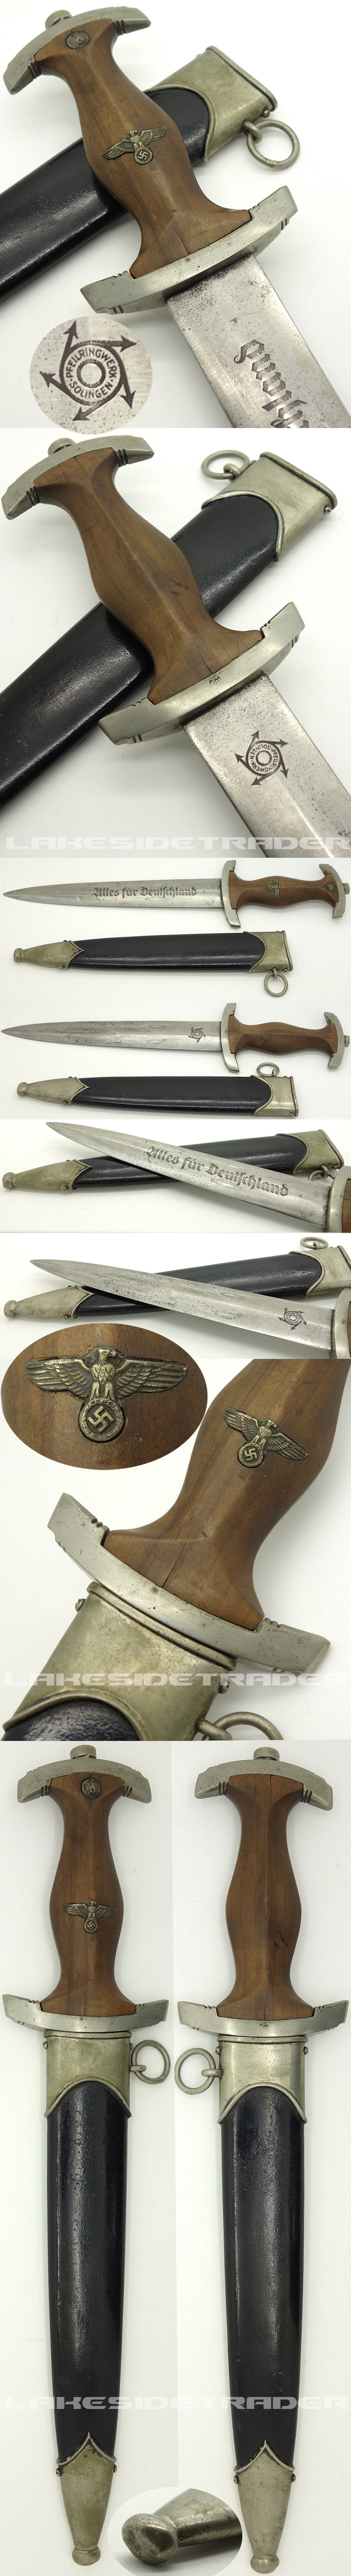 Early NSKK Dagger by Pfeilringwerk